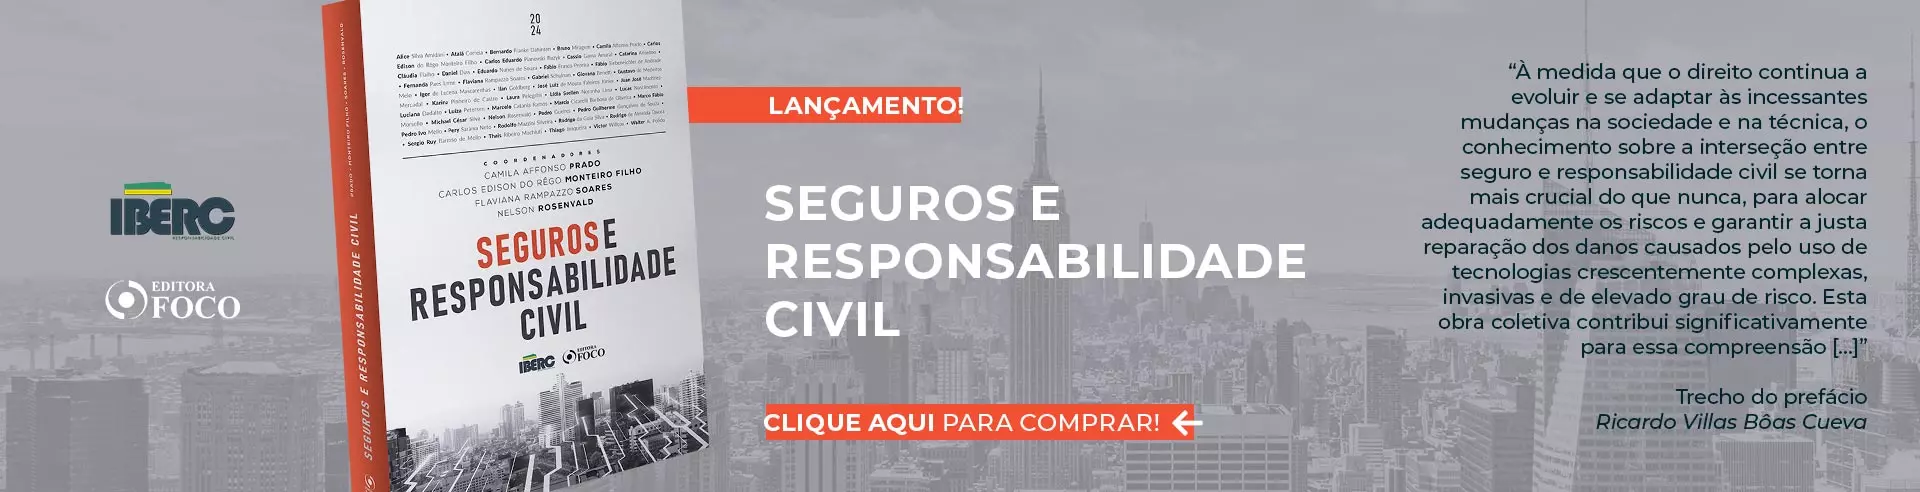 Seguros e responsabilidade civil